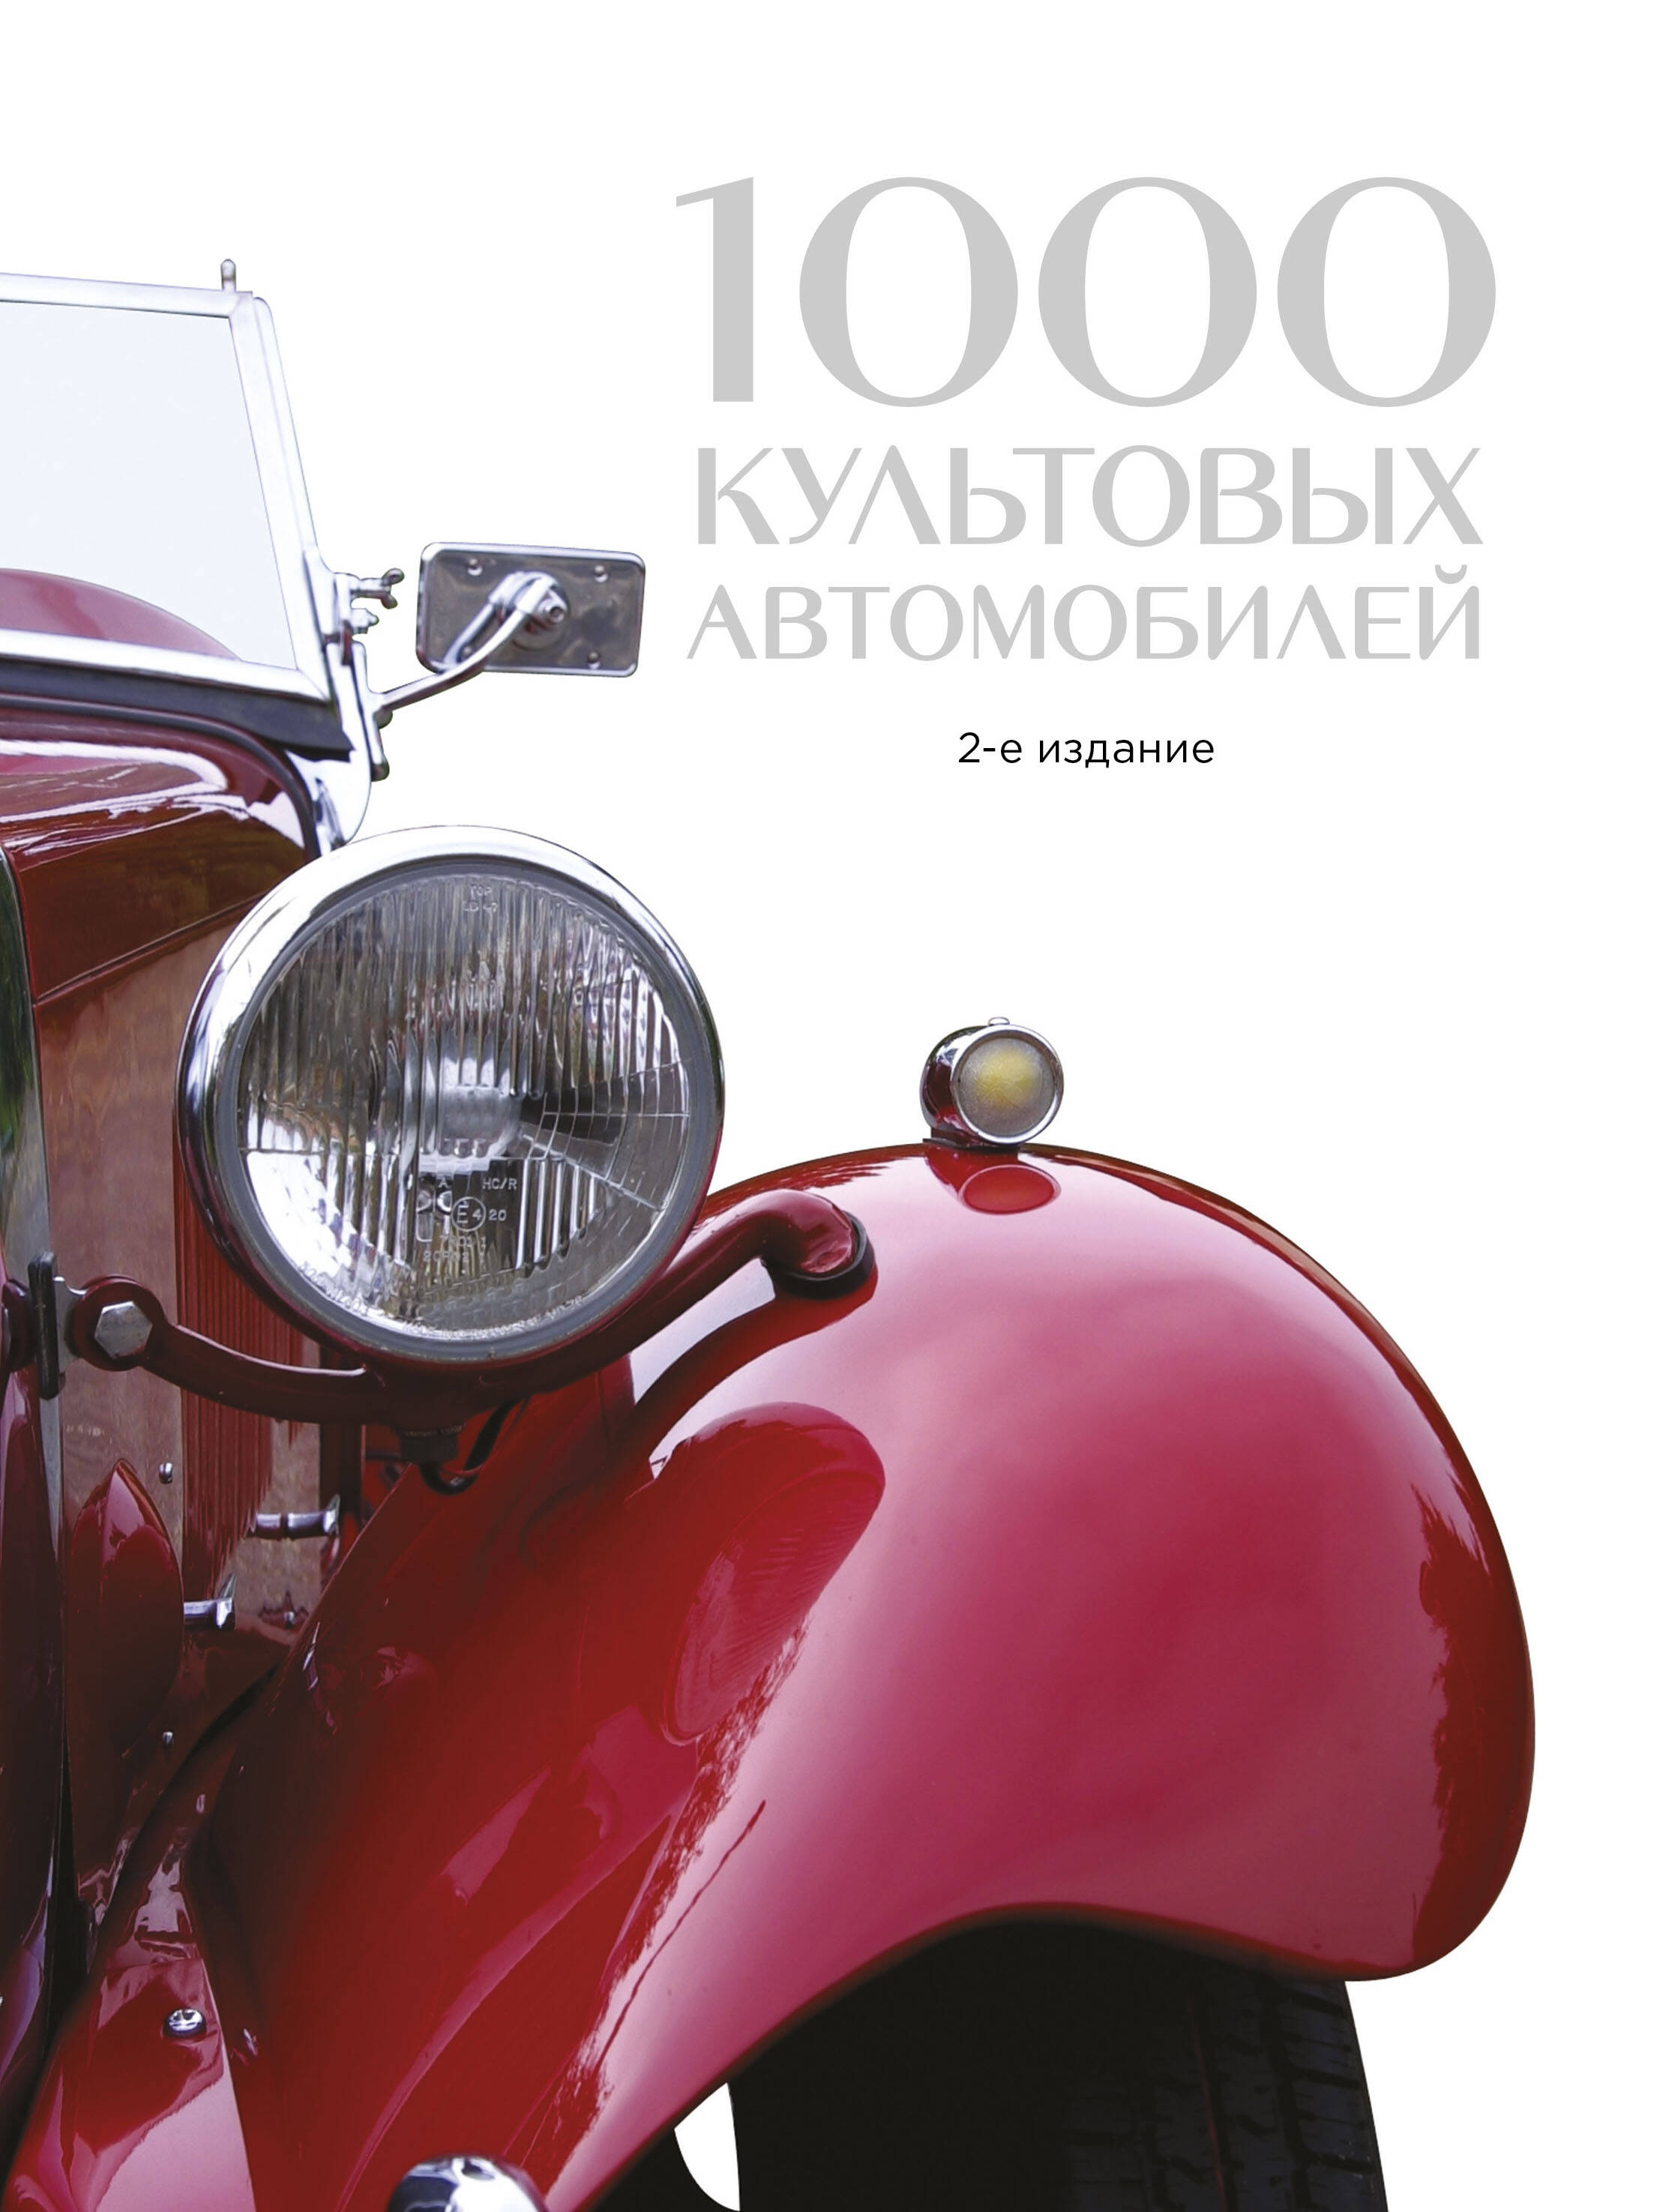 Дегтярёва Т. 1000 культовых автомобилей коннен ф 100 культовых автомобилей